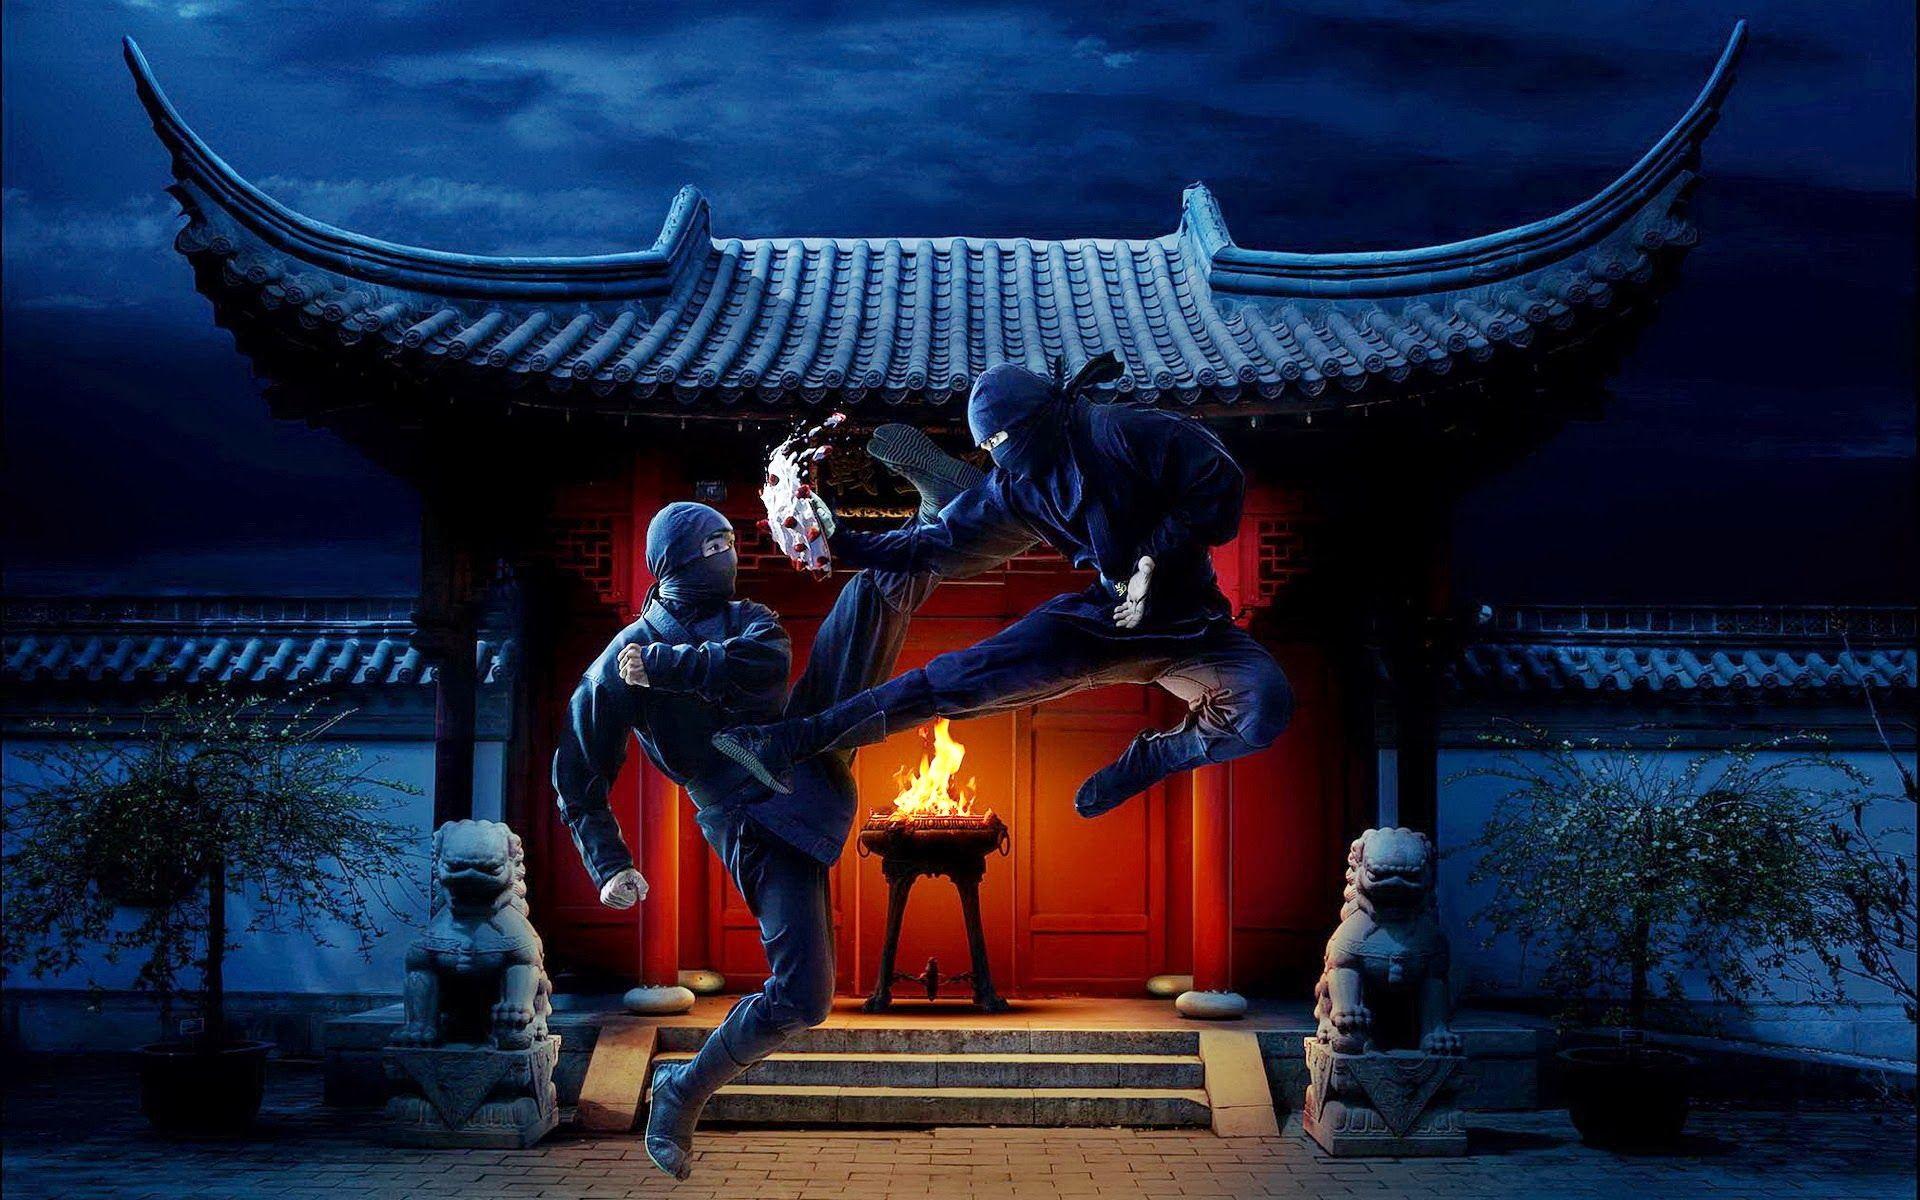 Ninja Fighting a258 HD Wallpaper